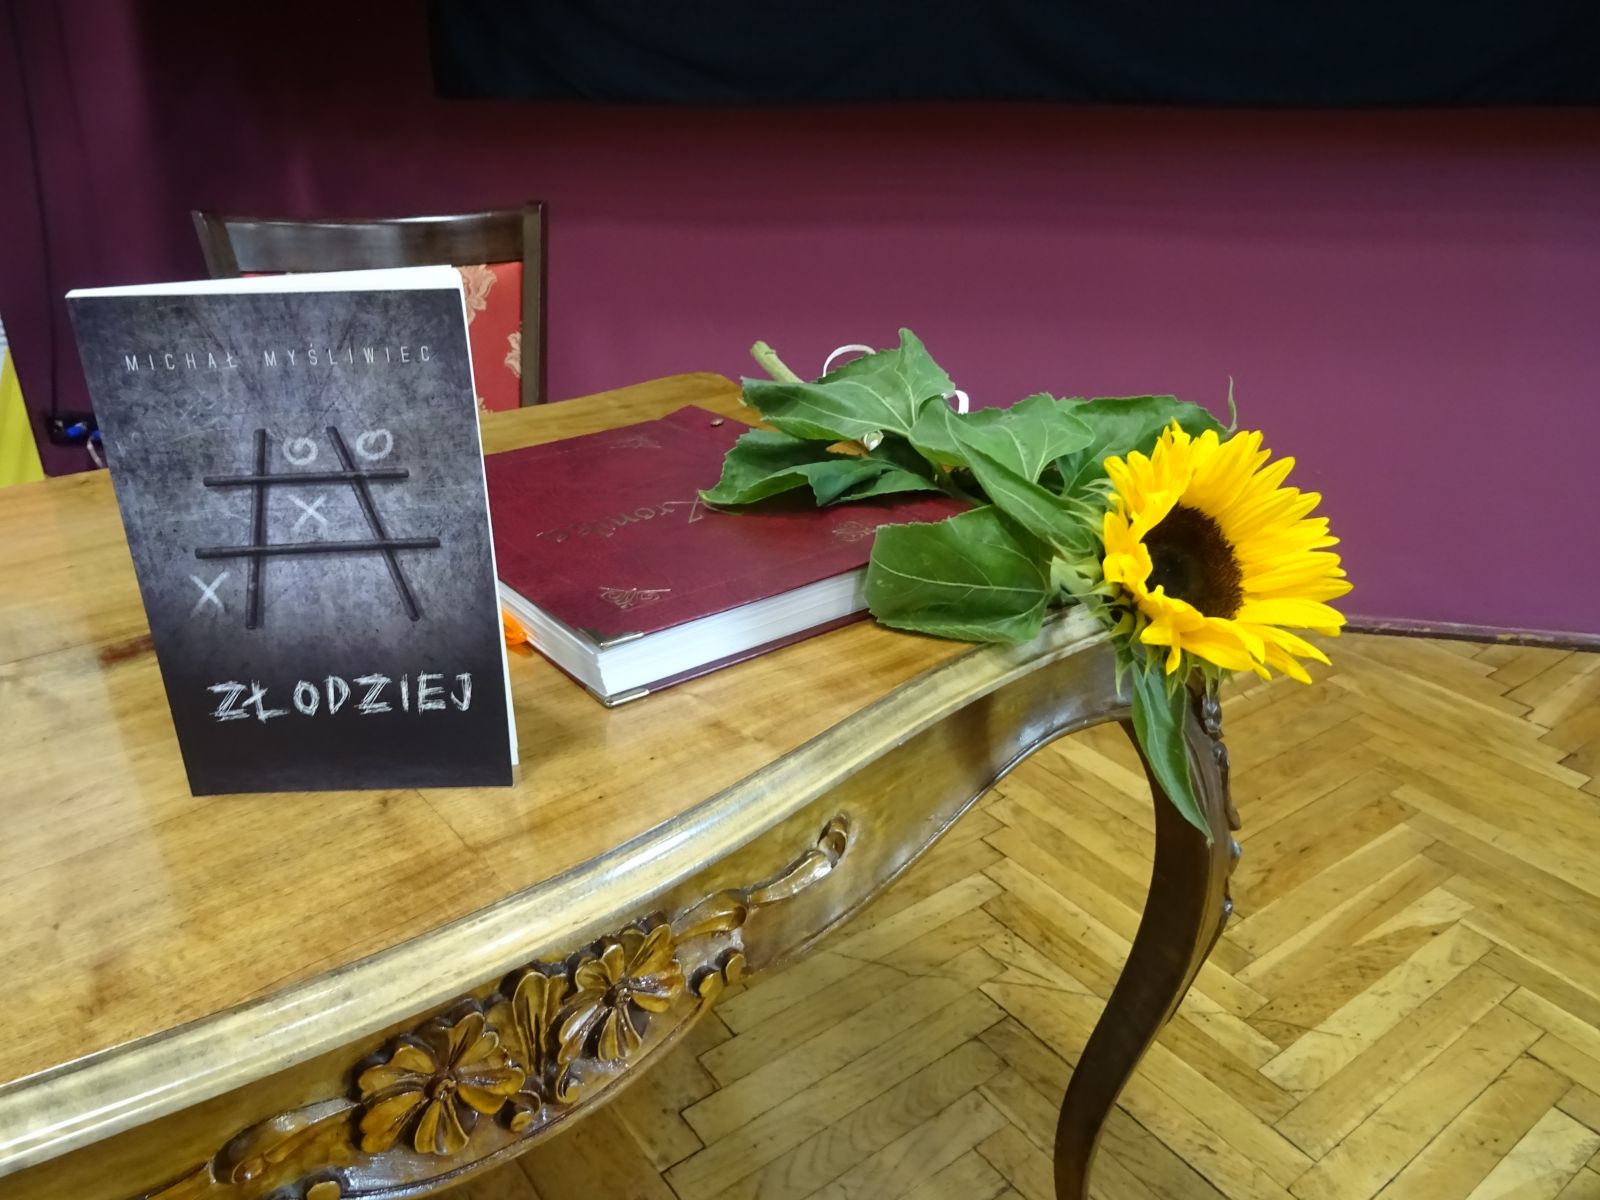 Fragment starego drewnianego stołu z rzeźbionym motywem kwiatowym z boku blatu. Na stole ustawiona promowana książka Złodziej, obok leży kronika biblioteki w czerwonej okładce i pojedynczy kwiat słonecznika.